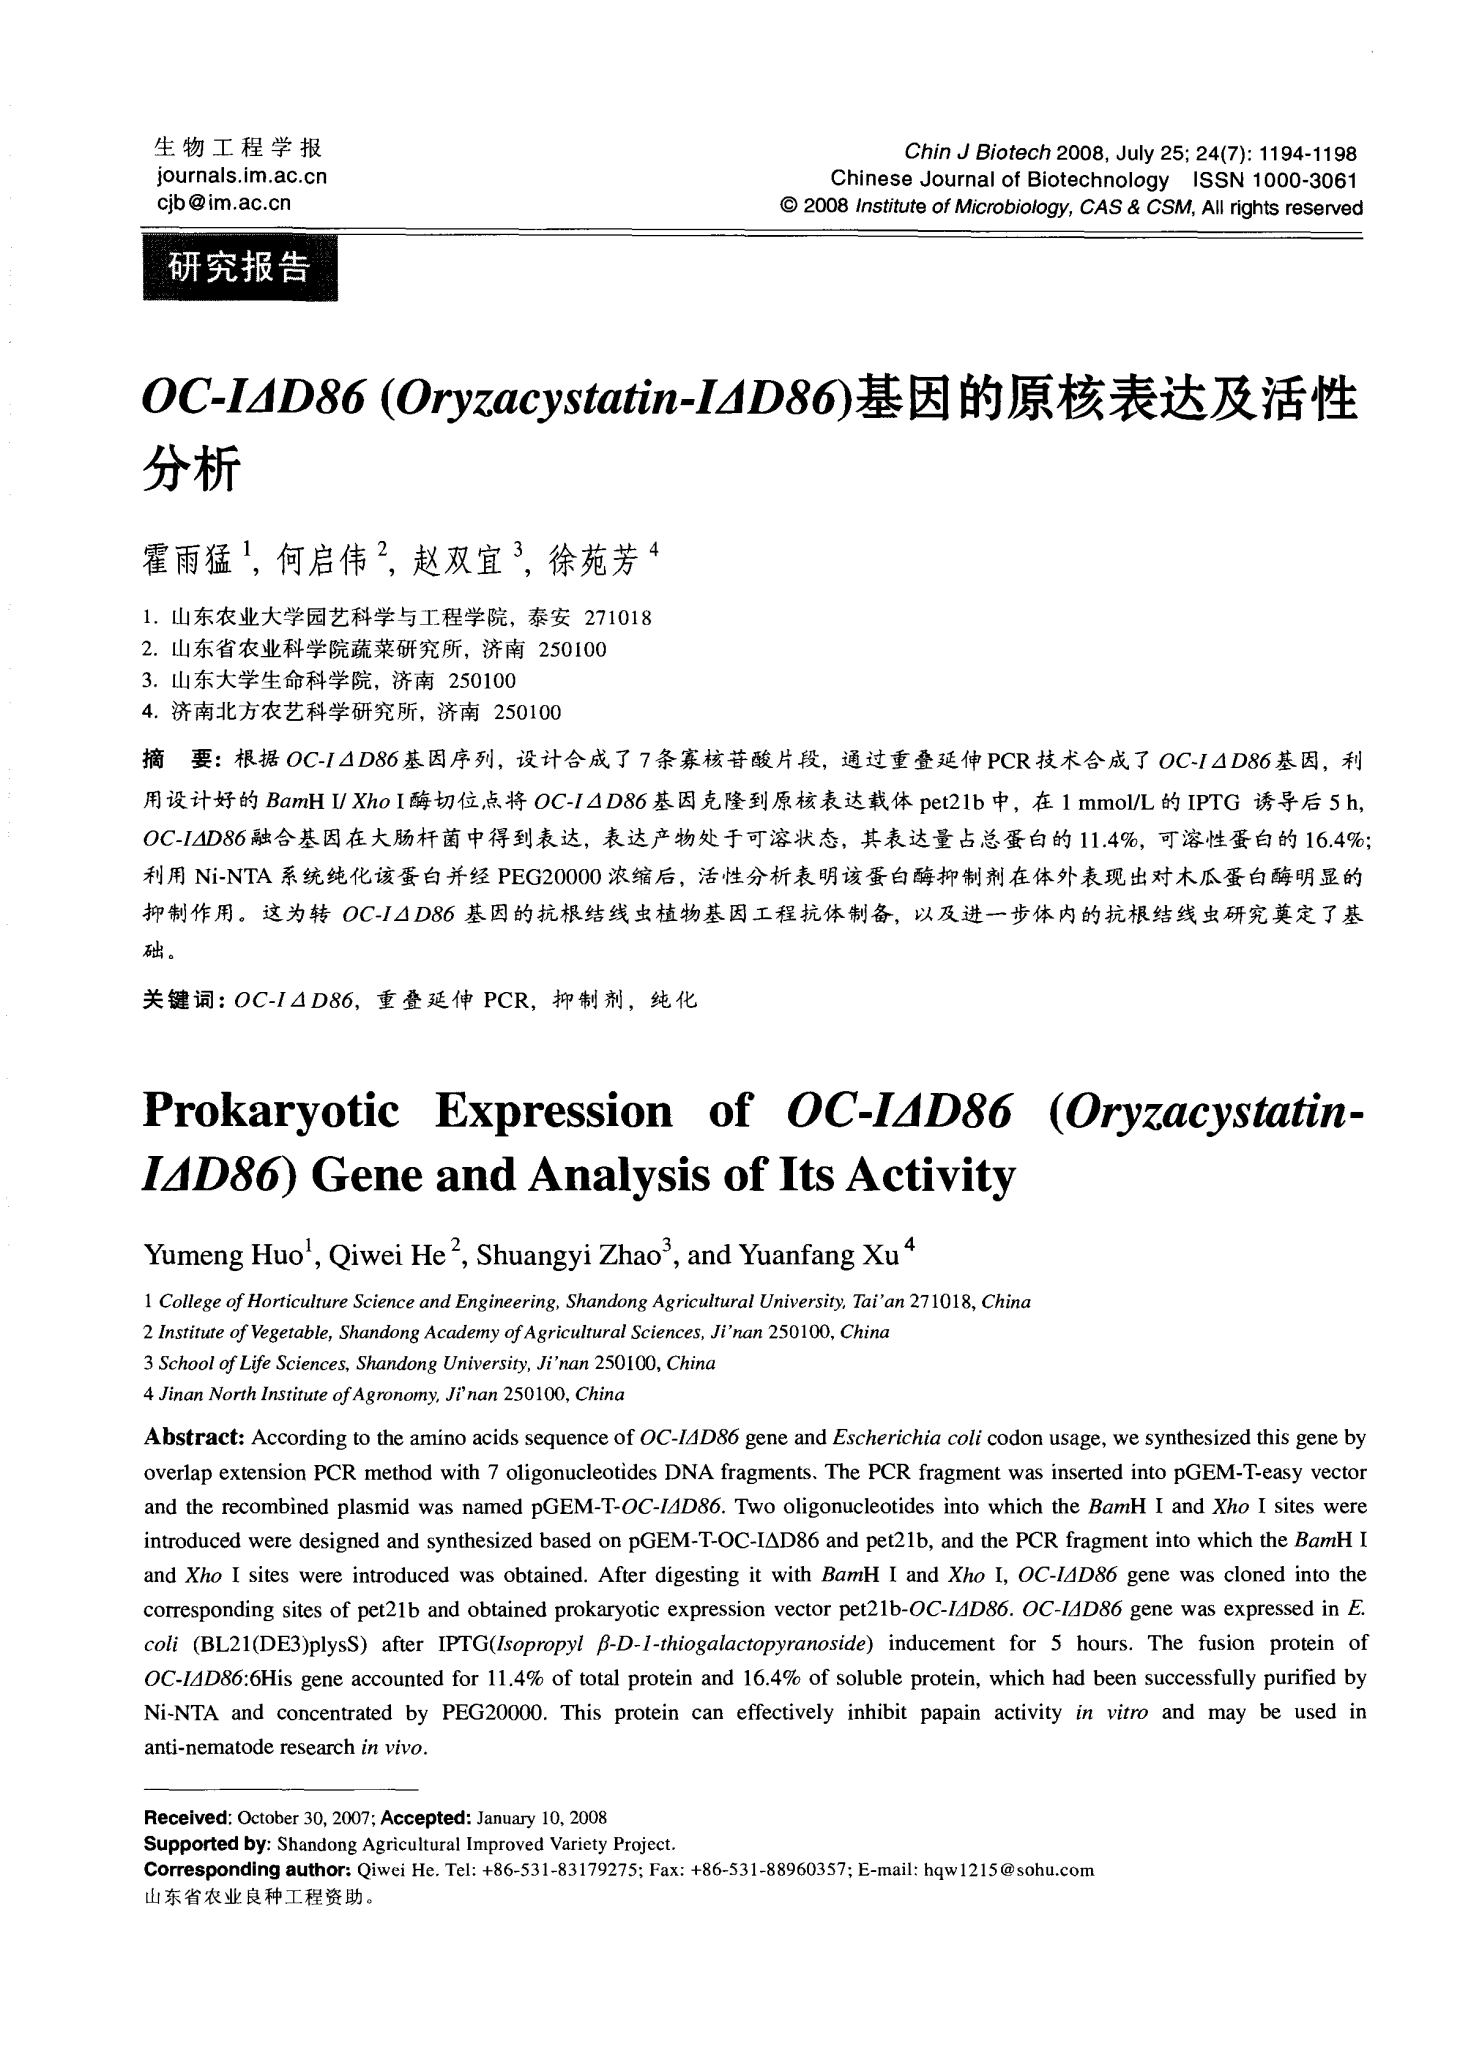 OC-I△D86(Oryzacystatin-I△D86)基因的原核表达及活性分析